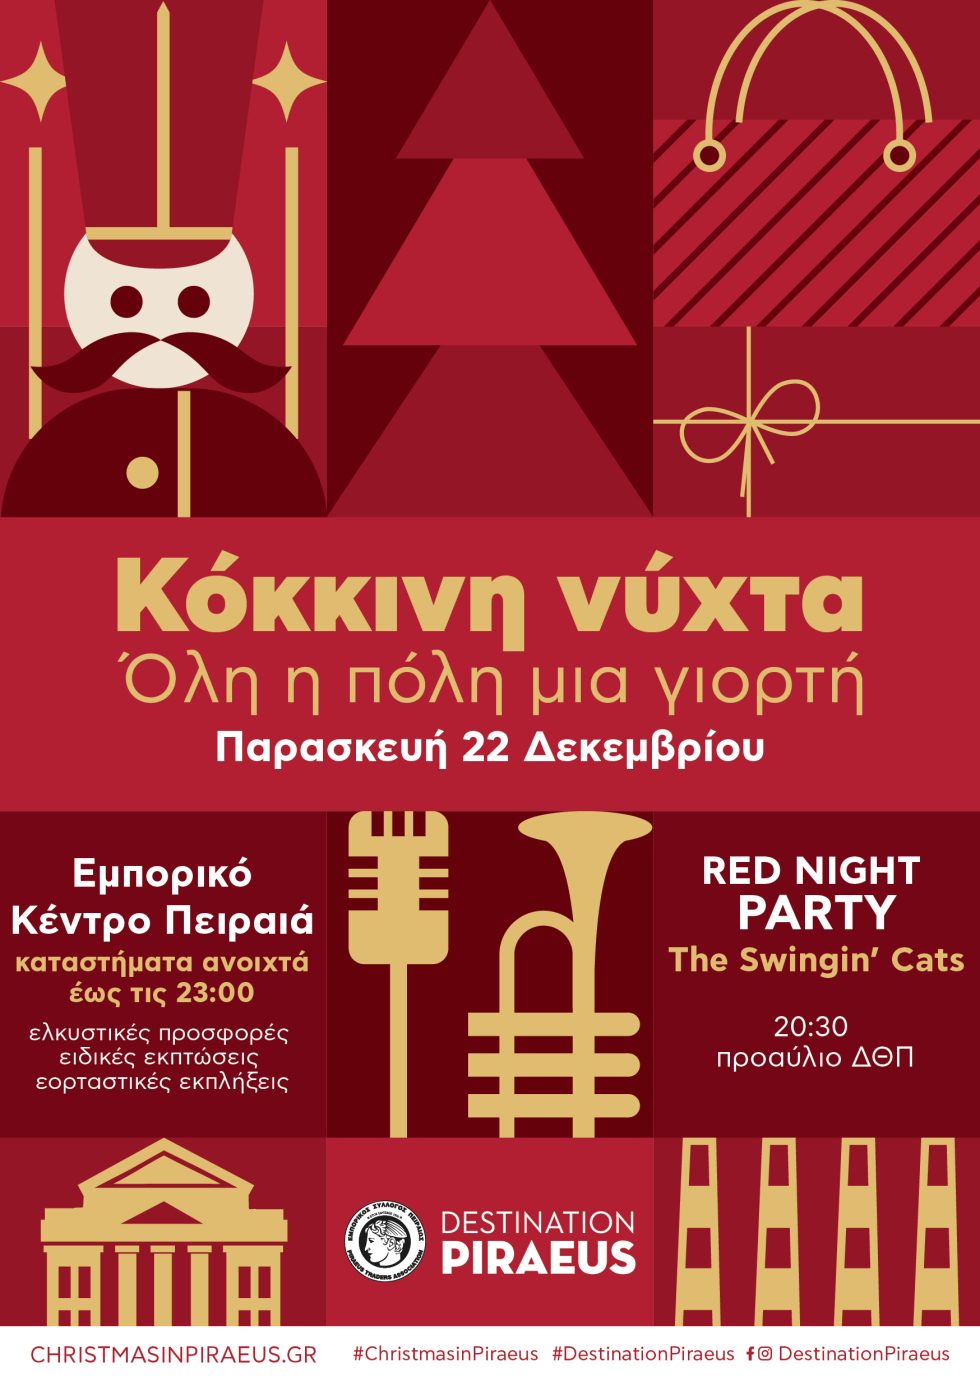 Κόκκινη νύχτα στον Πειραιά - Όλη η πόλη μια γιορτή